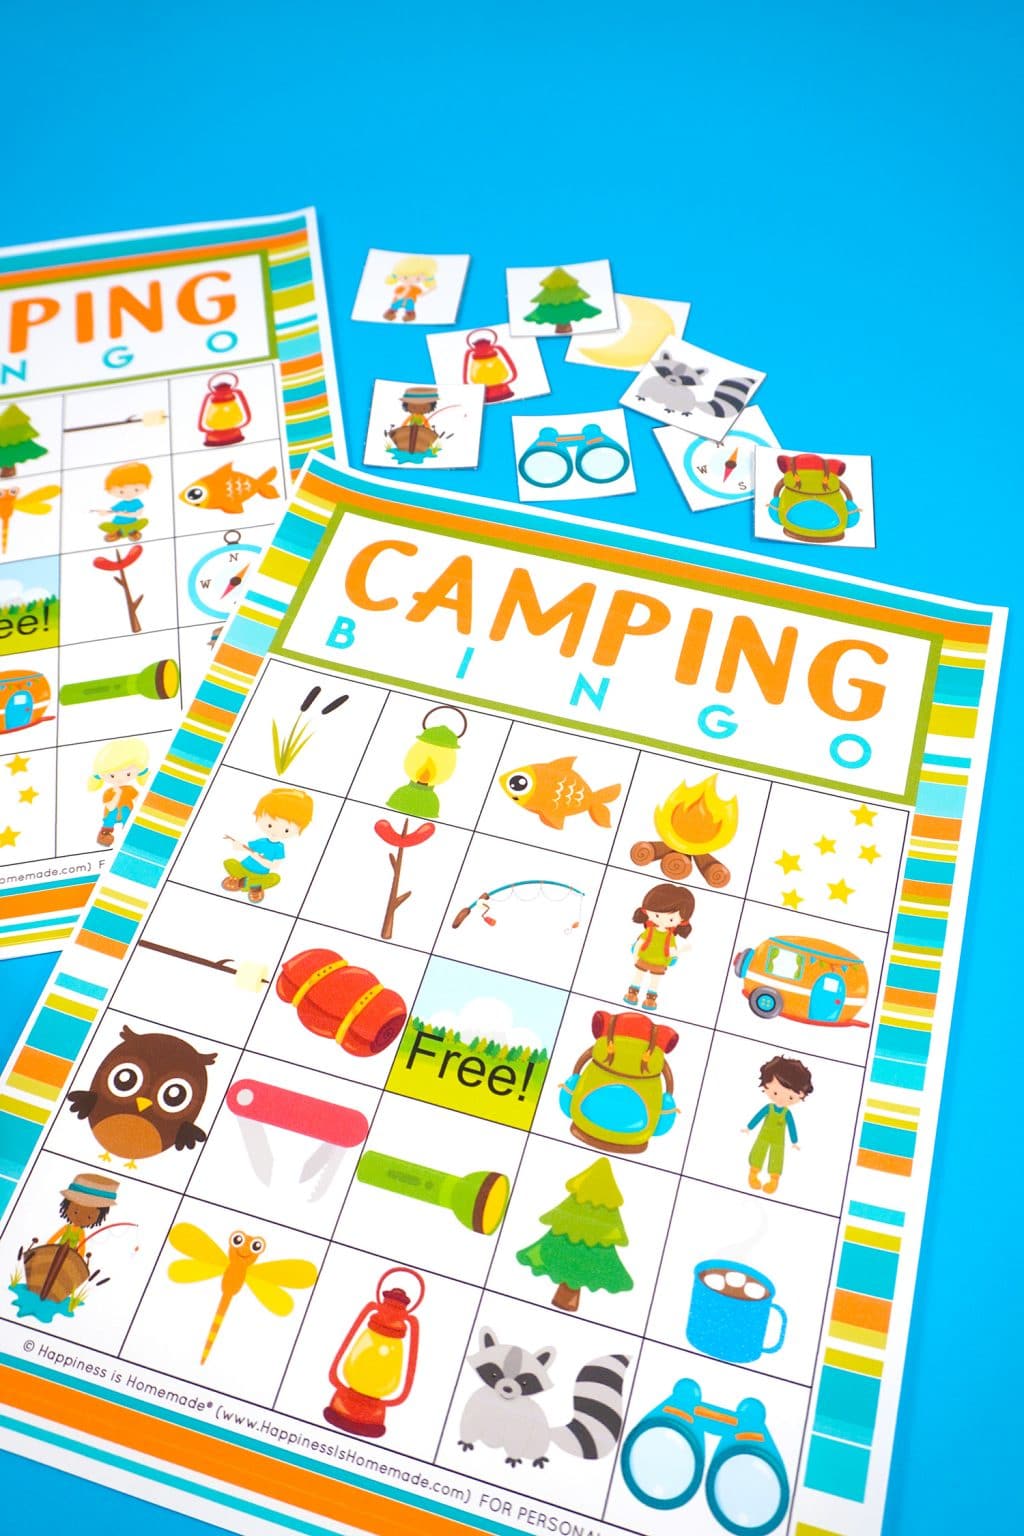 Free Printable Camping Bingo Game